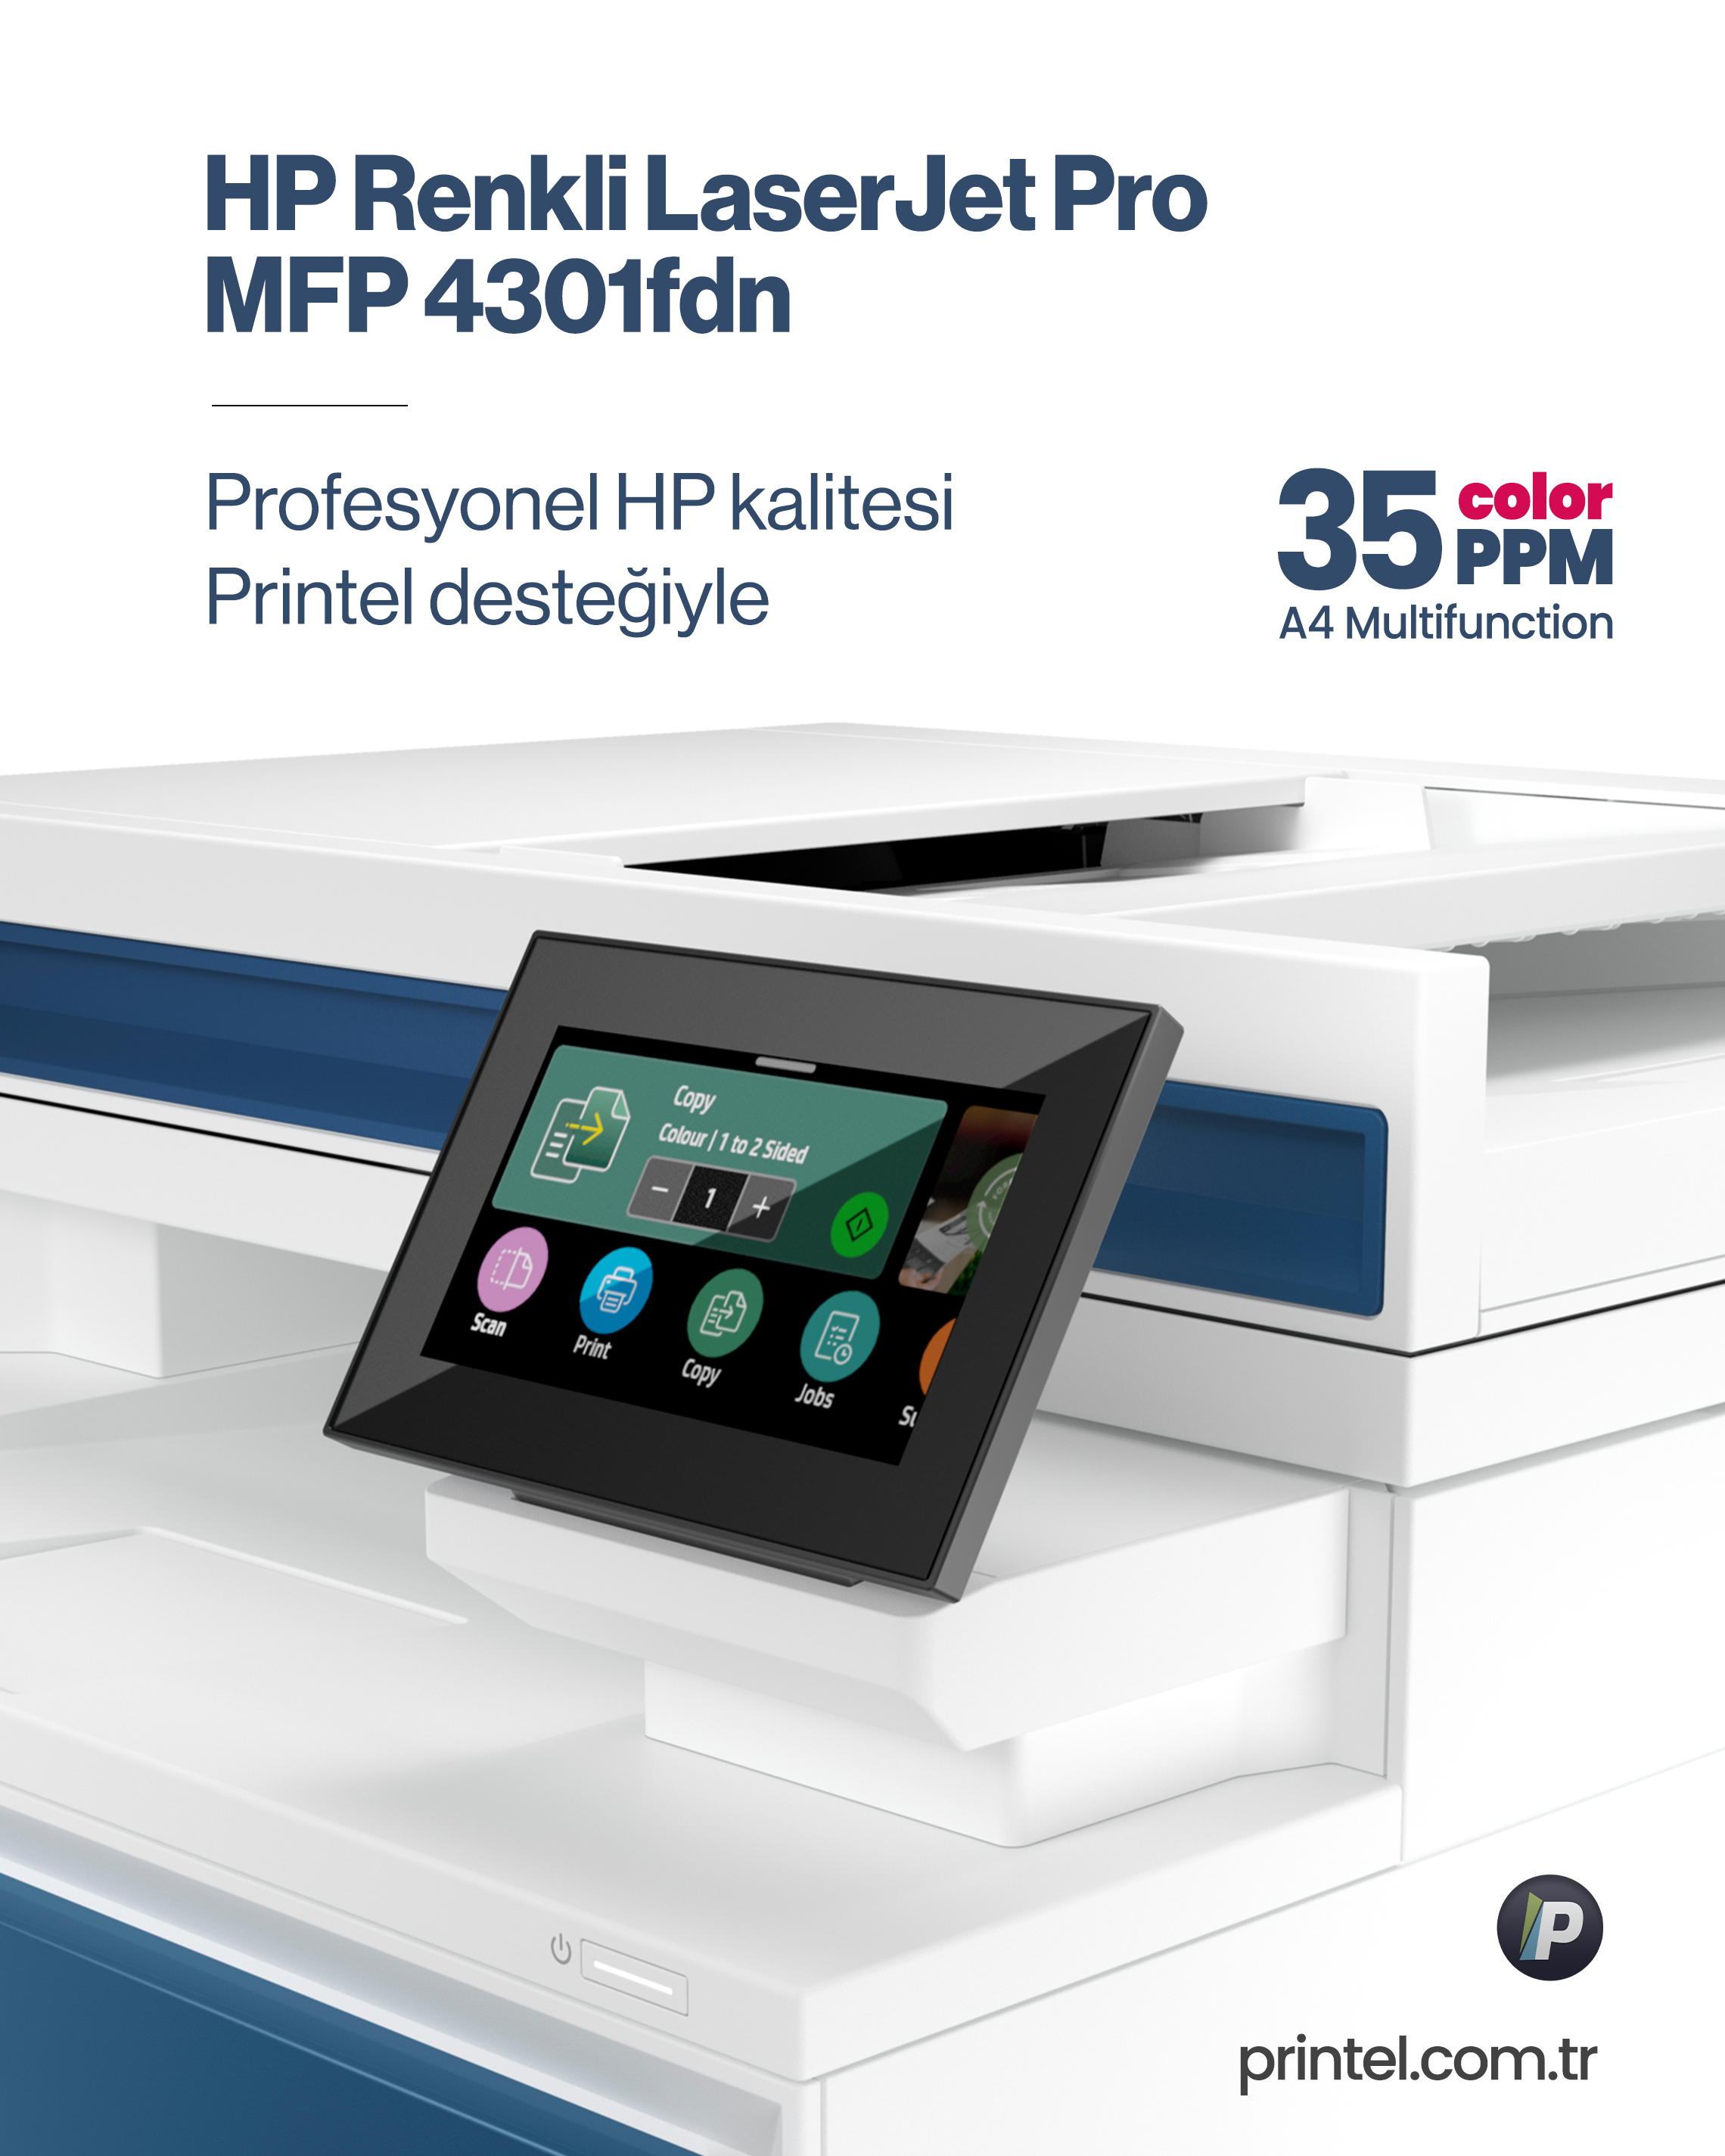 HP Renkli LaserJet Pro MFP 4301fdn Yazıcı: Kurumsal Yazdırma İhtiyaçlarına Uyumlu Çözüm 2